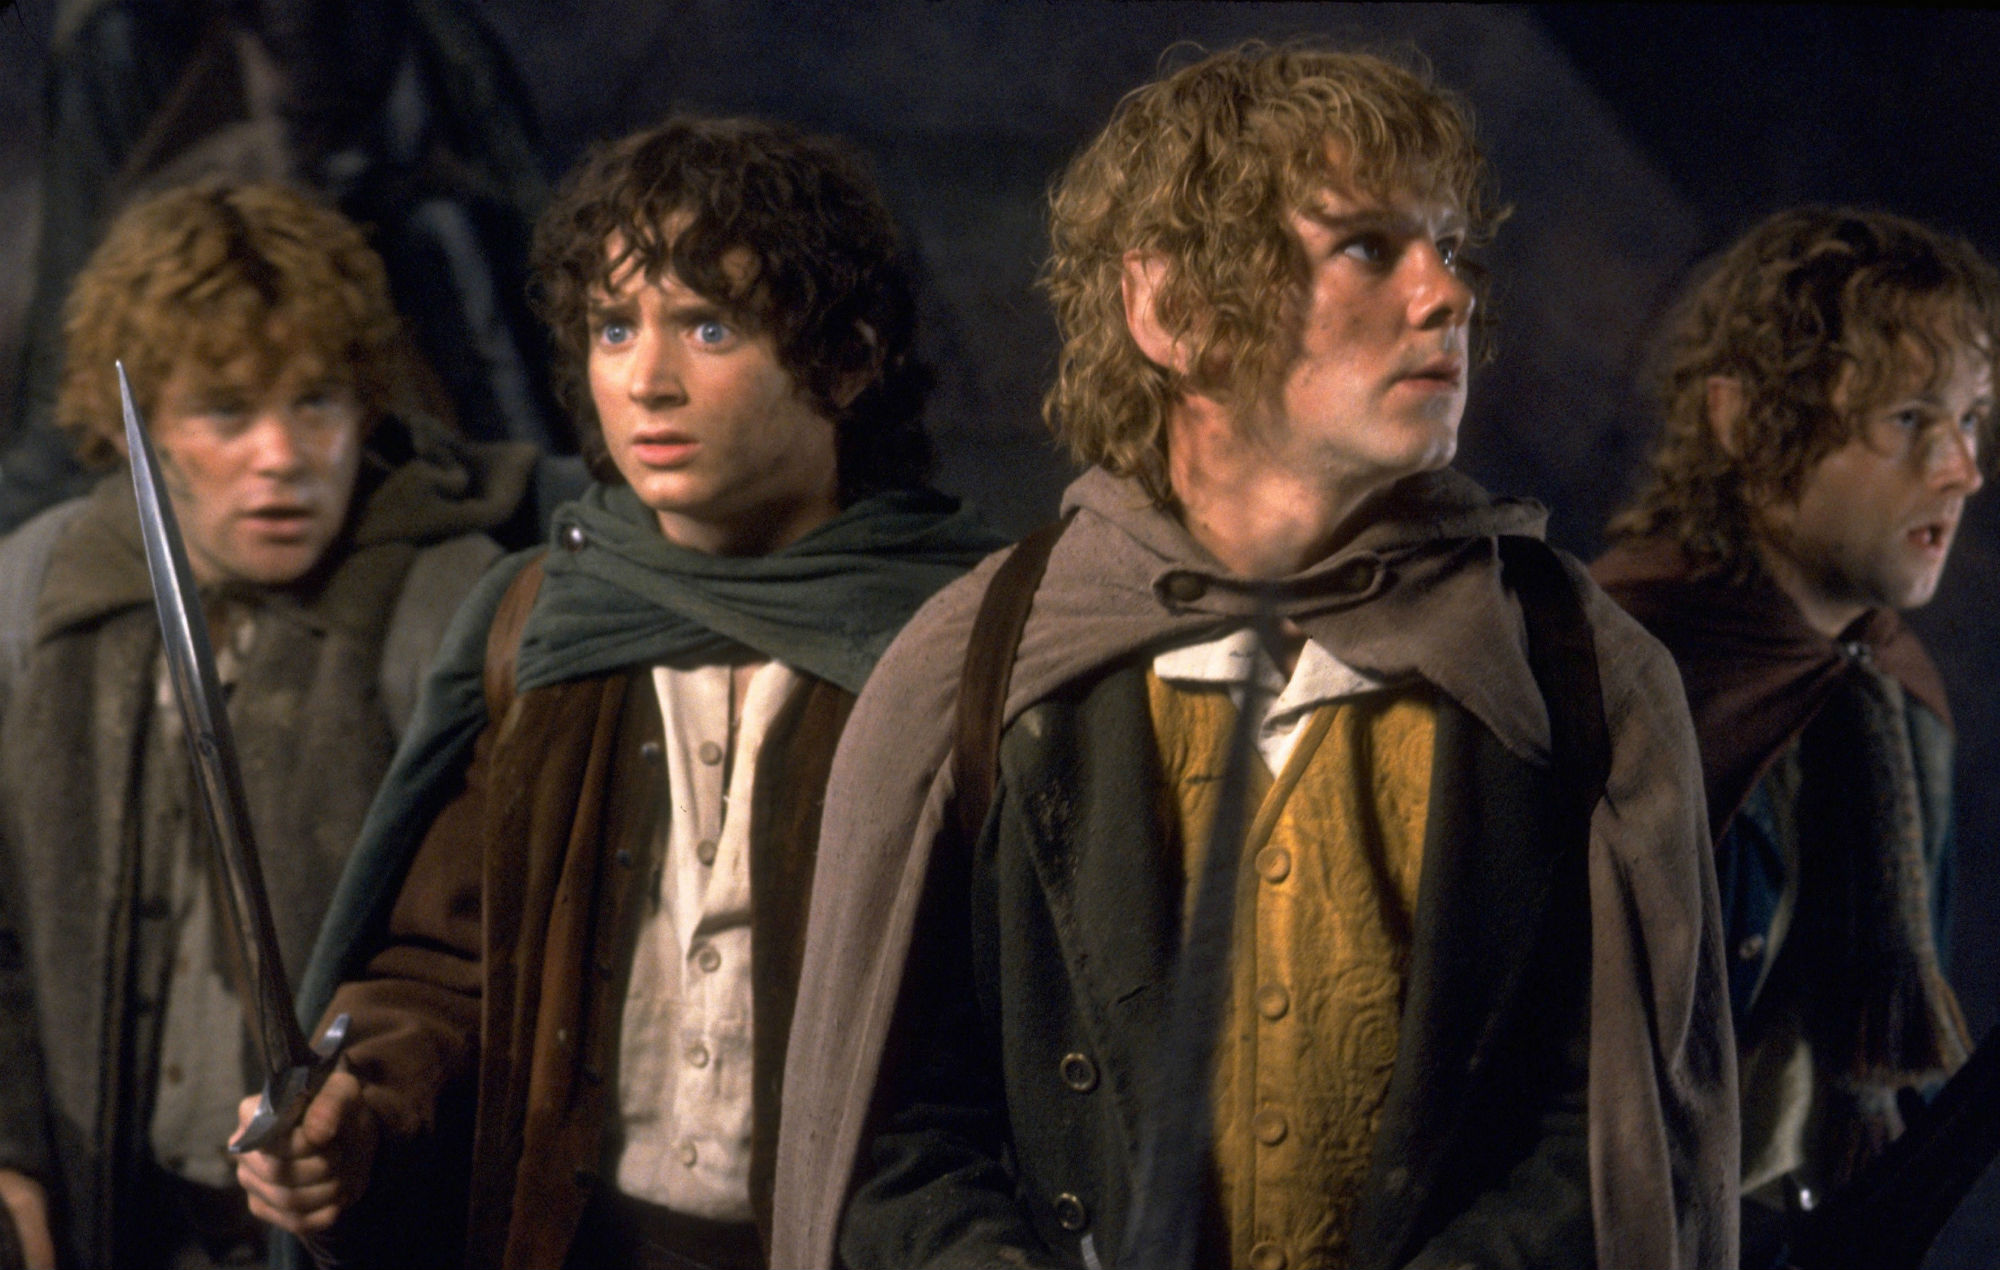 سه گانه ارباب حلقه ها (The Lord of the Rings) ساخته پیتر جکسون، یک دستاورد ماندگار است ادعایی که نمی توان در مورد هابیت ها (The Hobbit) داشت